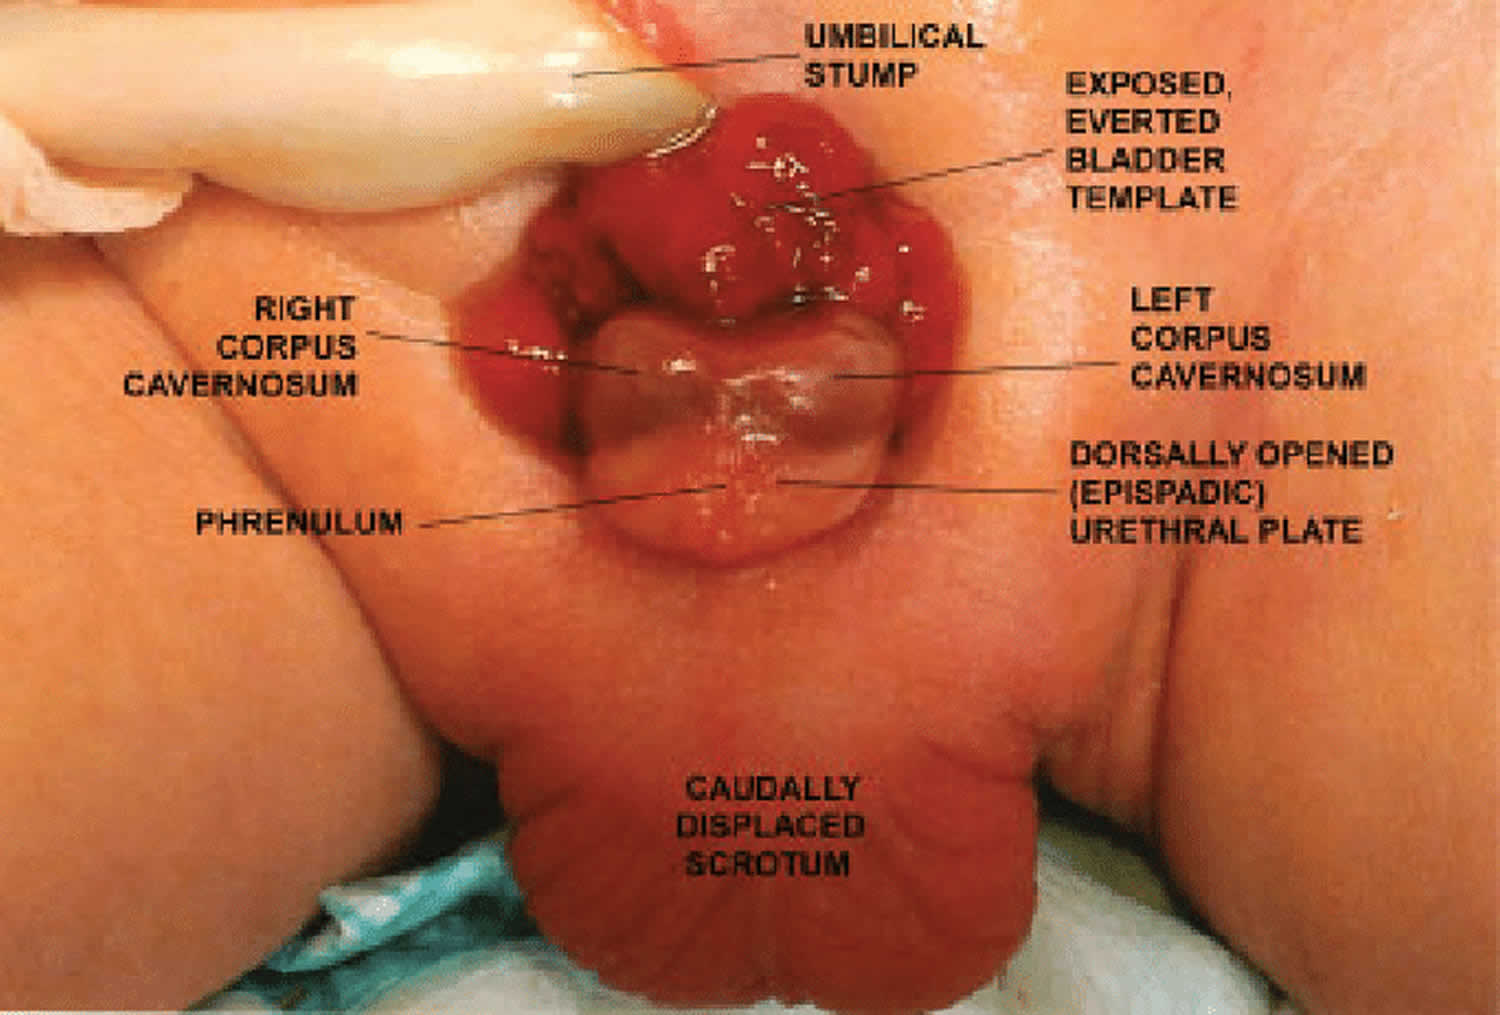 bladder exstrophy